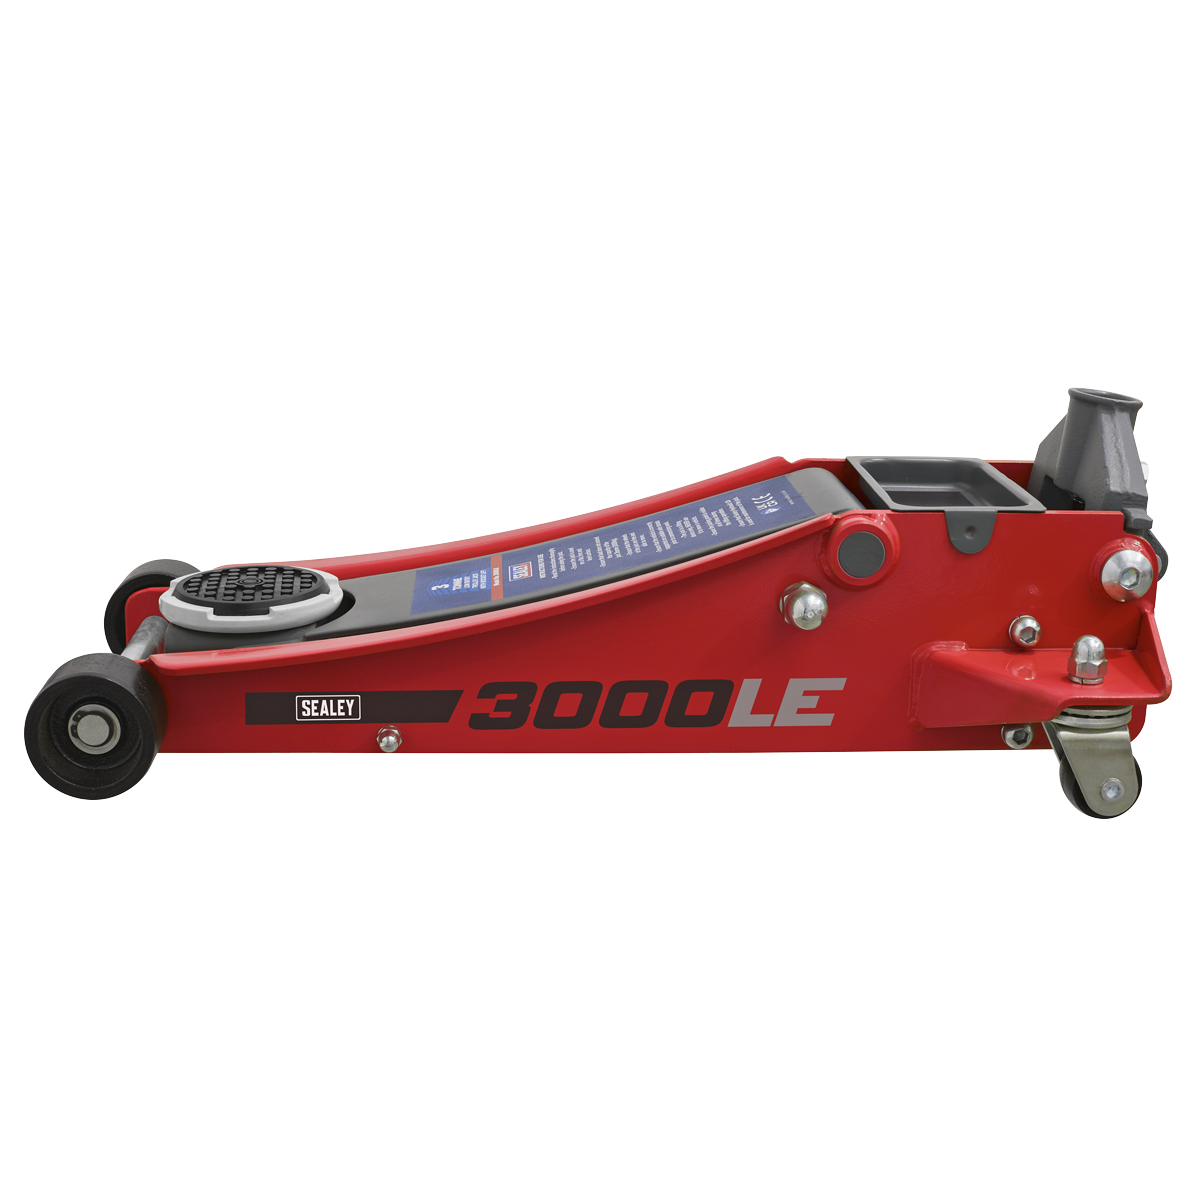 Trolley Jack 3tonne Low Profile Rocket Lift Red - 3000LE - Farming Parts